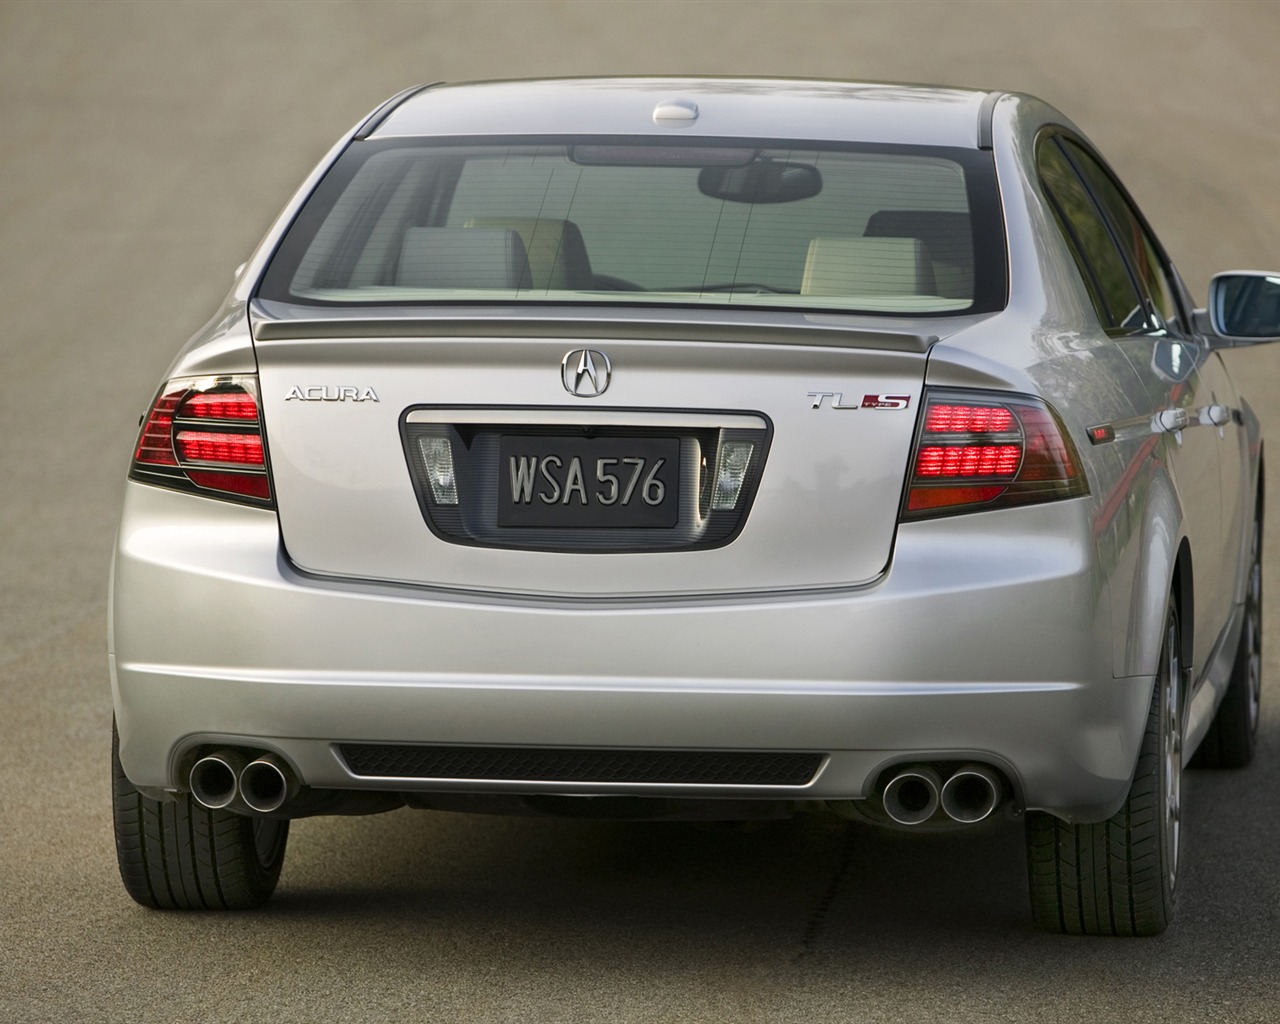 Acura TL Type S - 2008 讴歌31 - 1280x1024